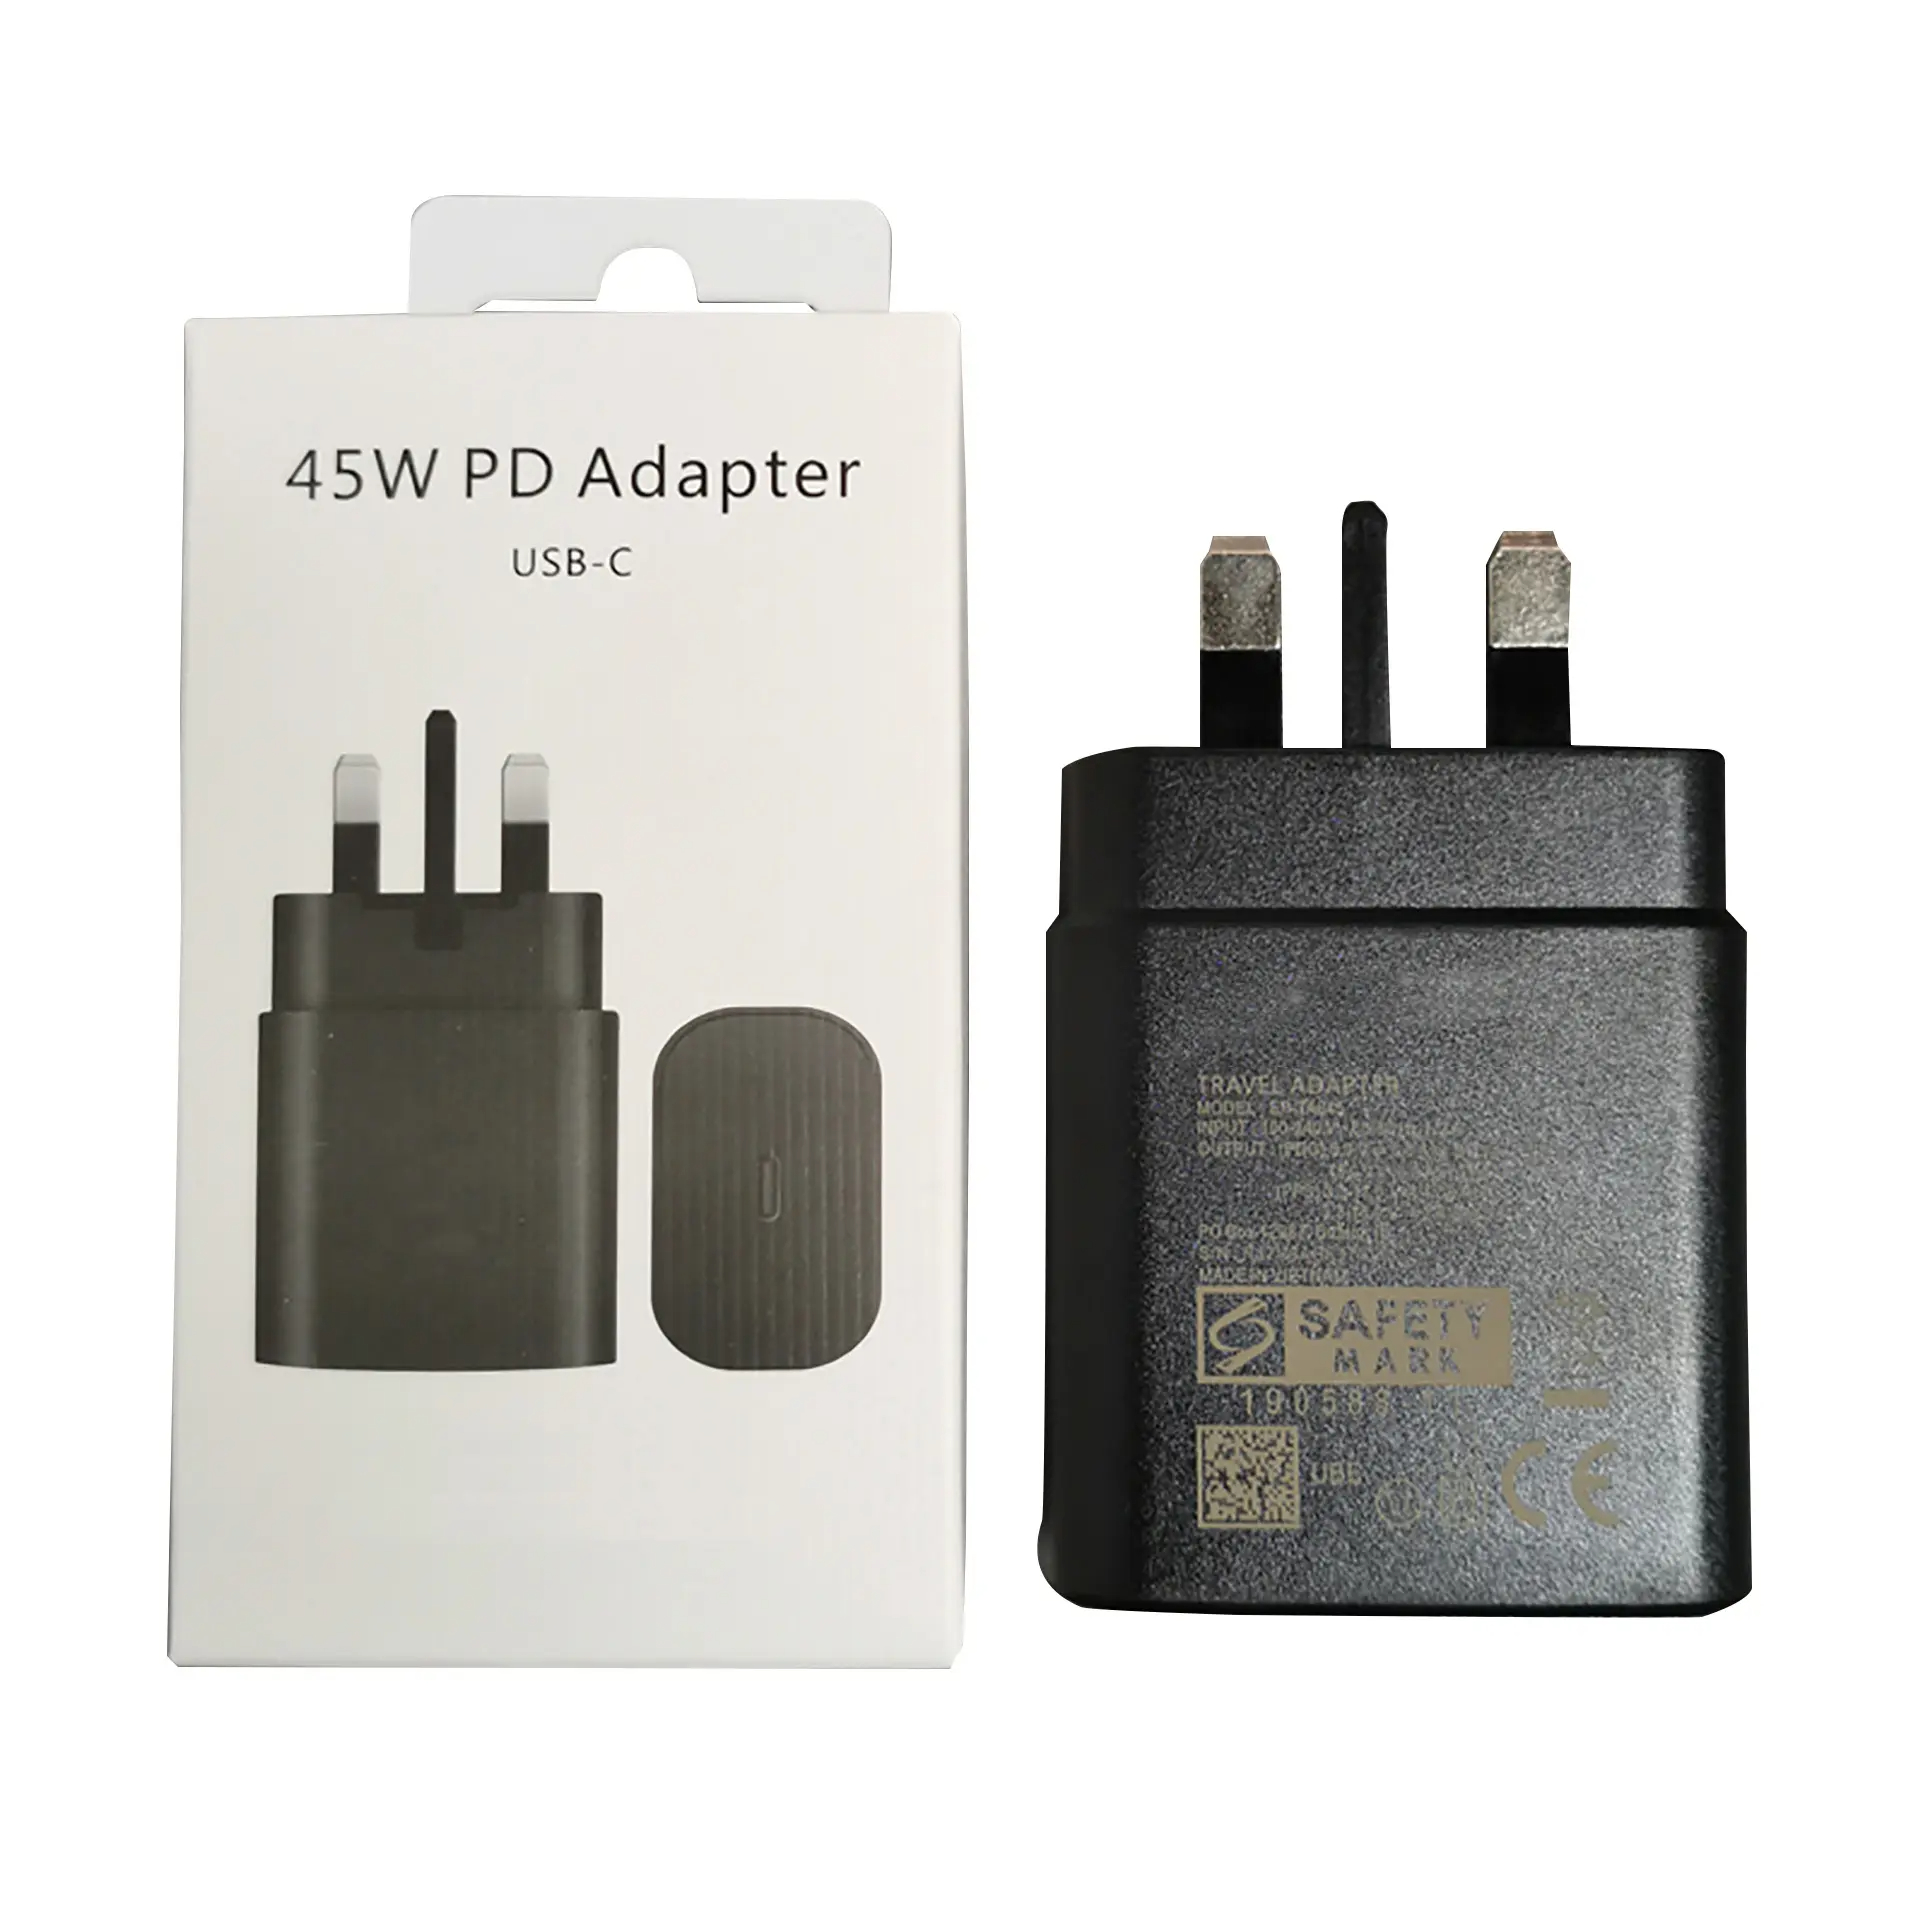 45w PD Adapter USB-C